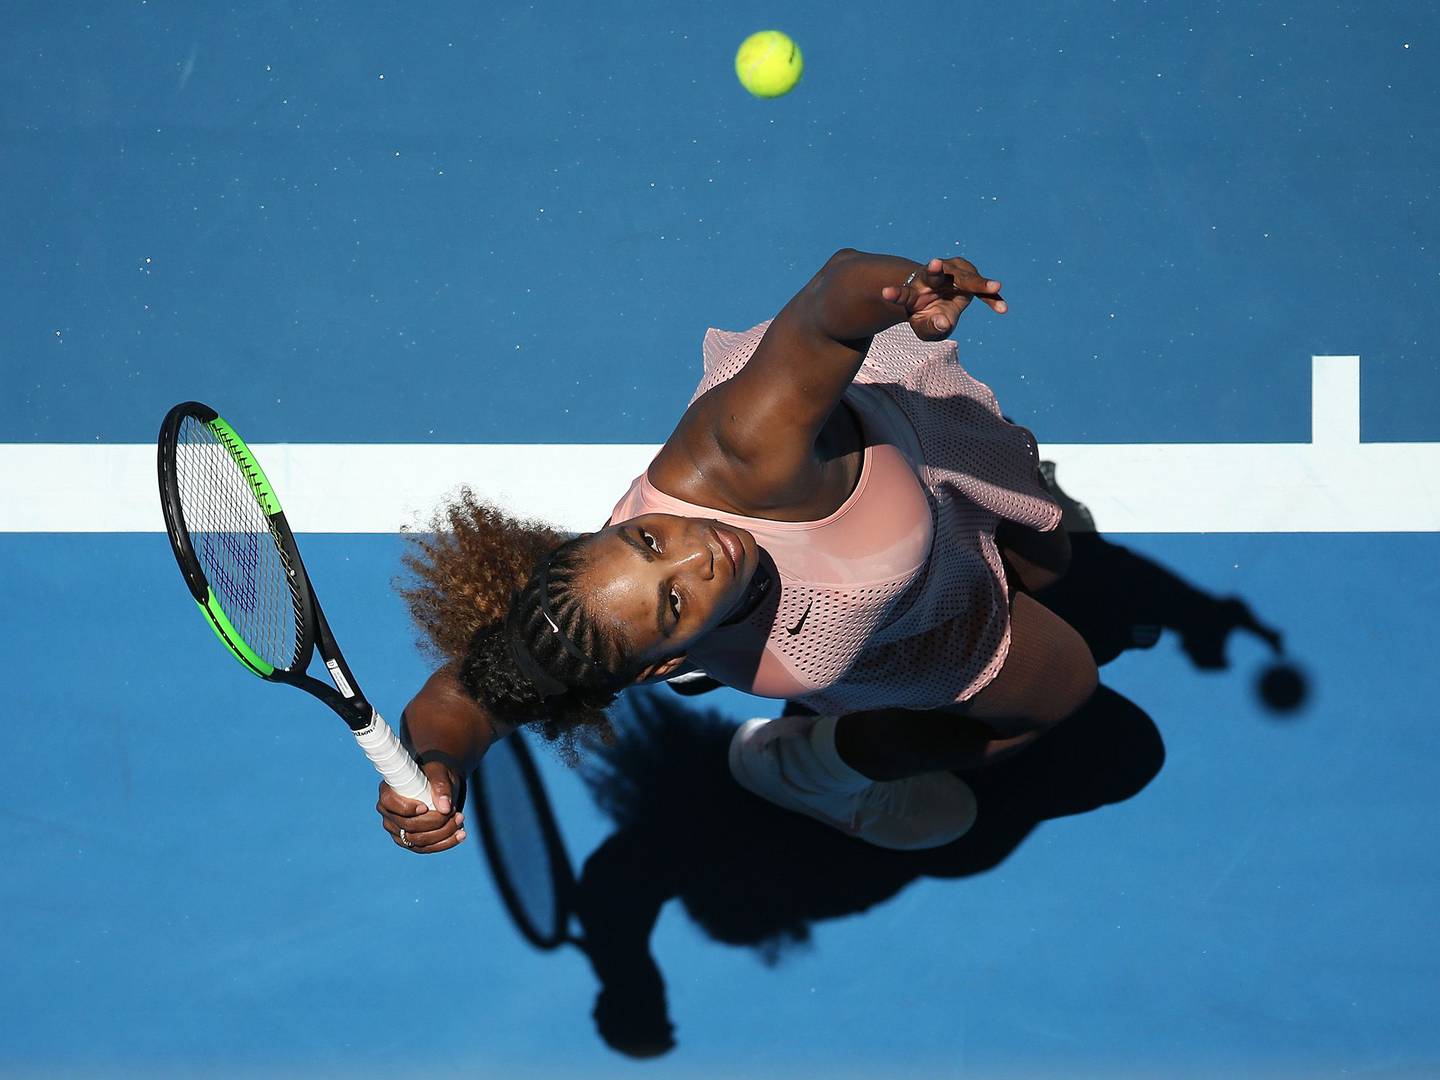 Serena Williams de Estados Unidos sirve a Maria Sakkari de Grecia durante el tercer día de la Copa Hopman 2019 en el RAC Arena el 31 de diciembre de 2018 en Perth, Australia. Fotógrafo: Paul Kane